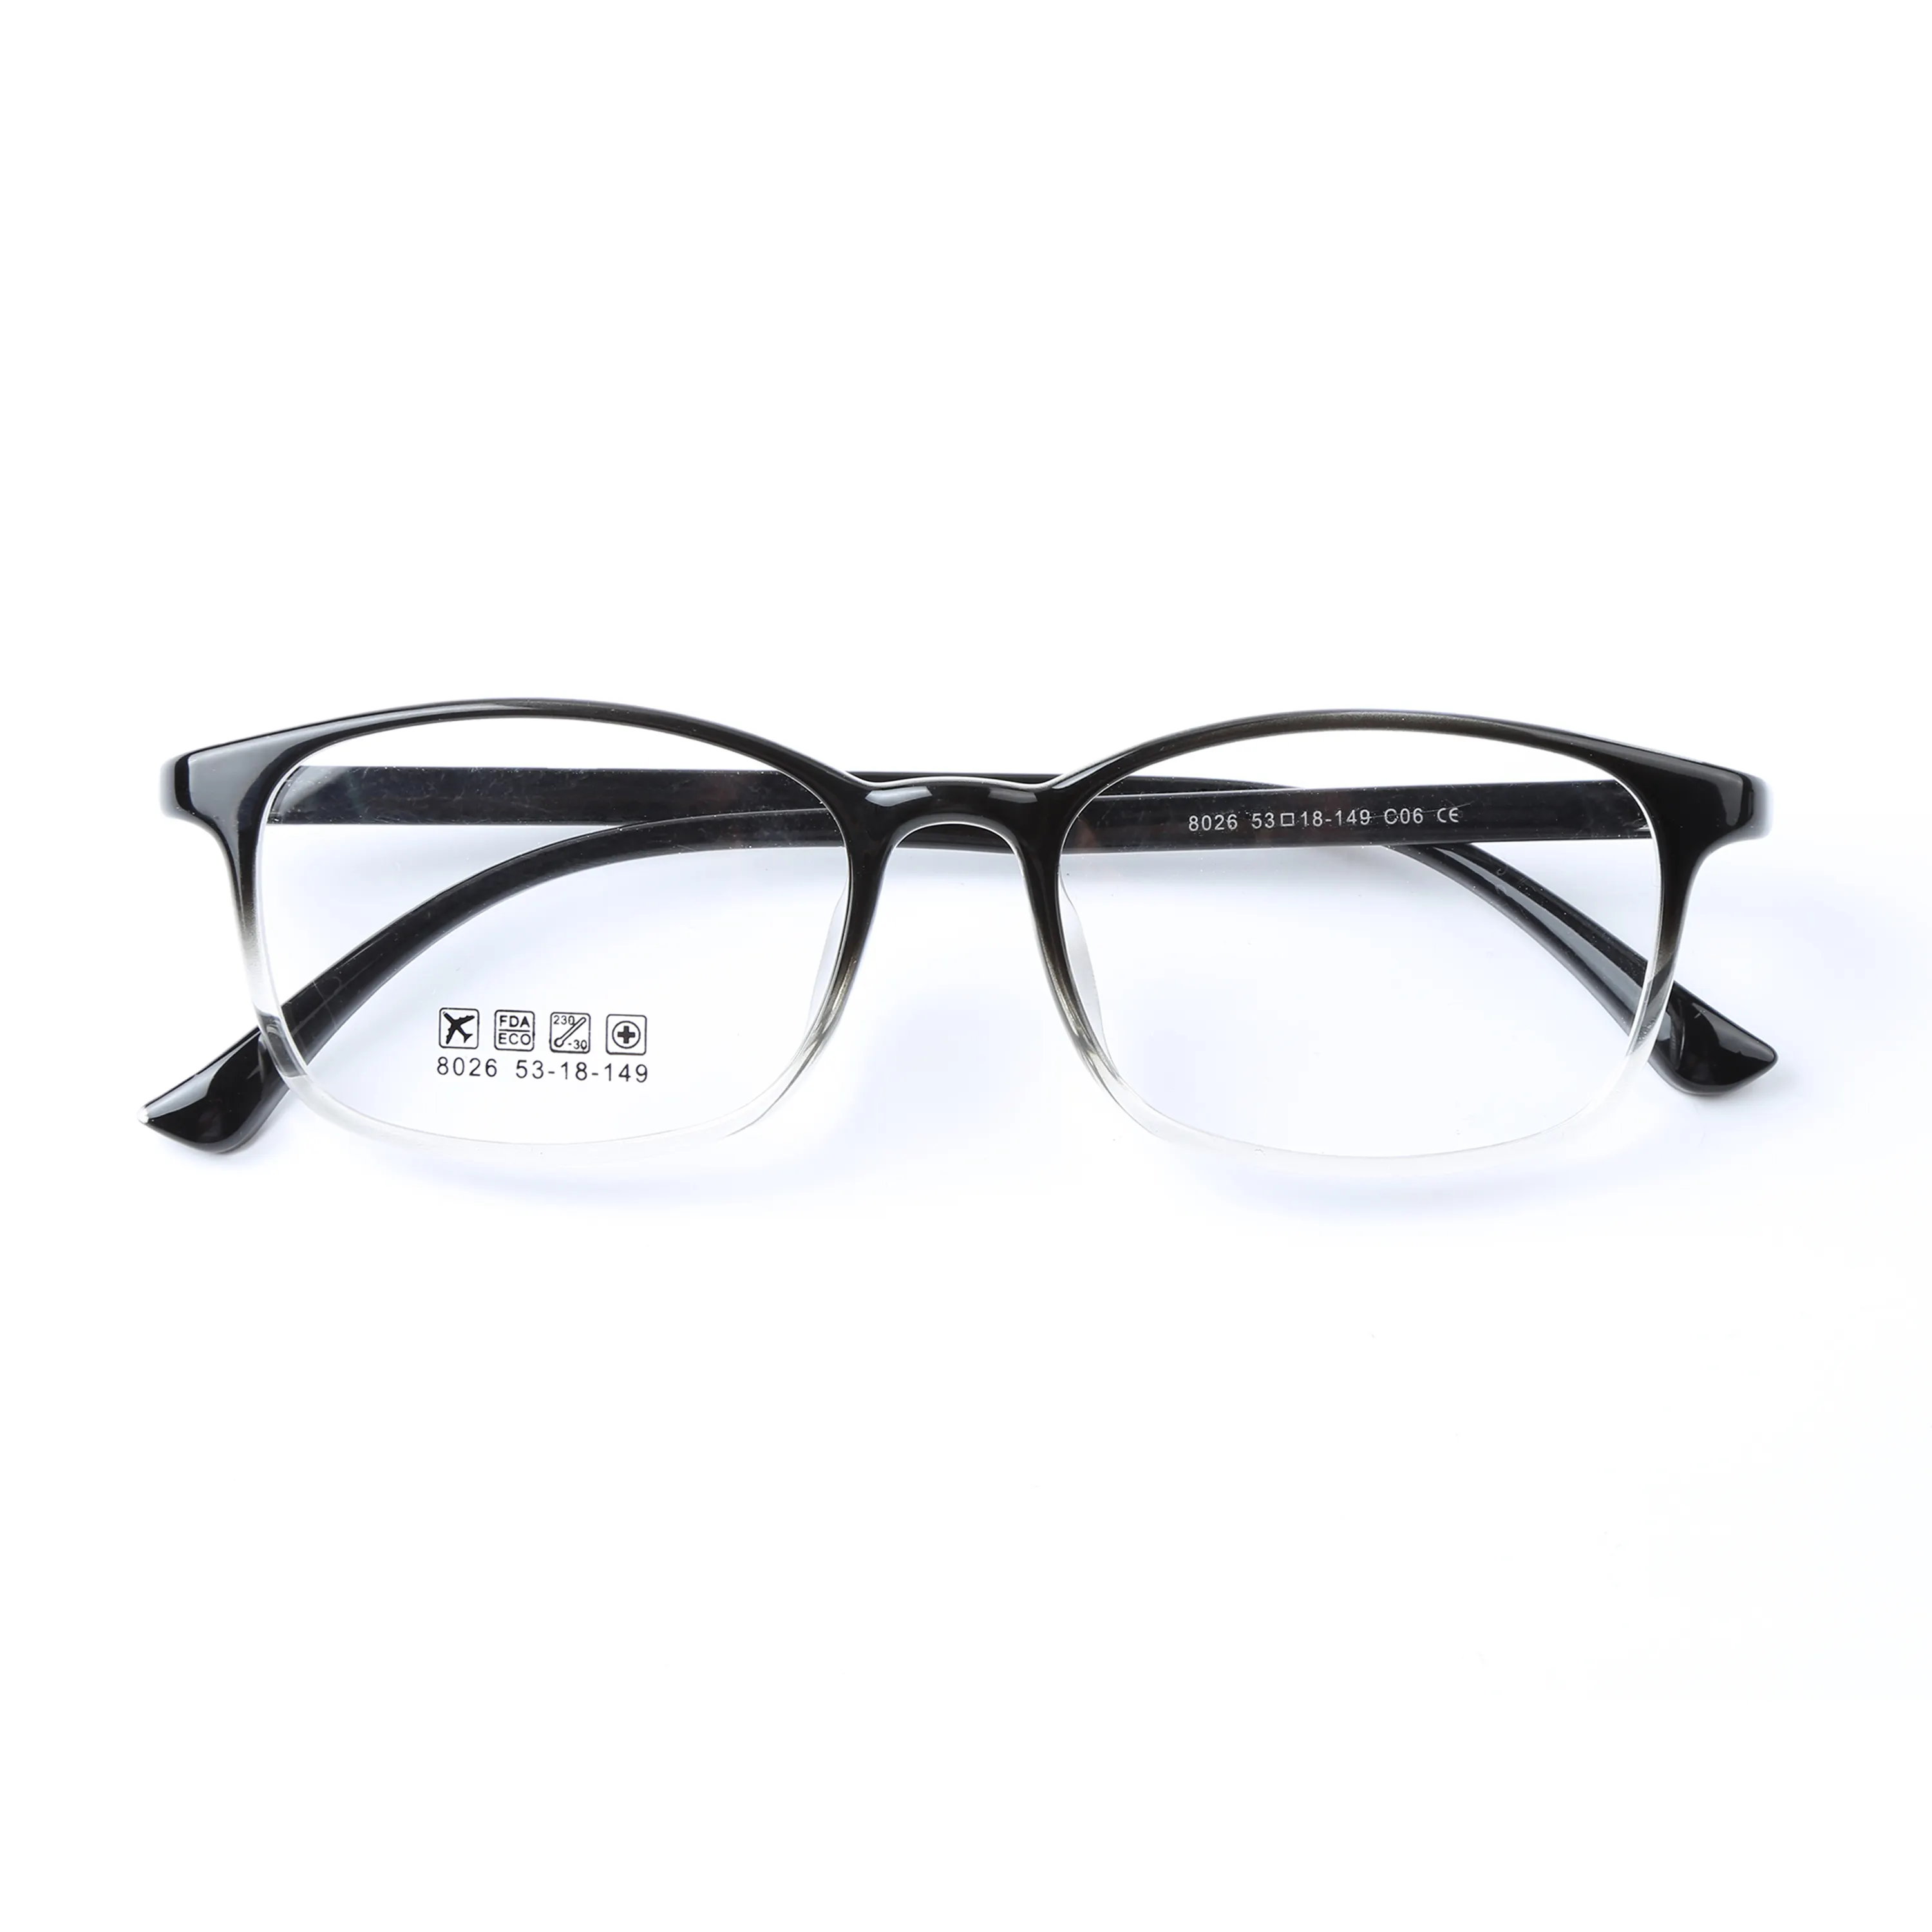 Neue Ankunft Gute Qualität Gläser Rahmen Italienische Innovative Tr90 Rahmen Brillen Frauen Optische Rahmen Brillen Design Ihre Eigenen